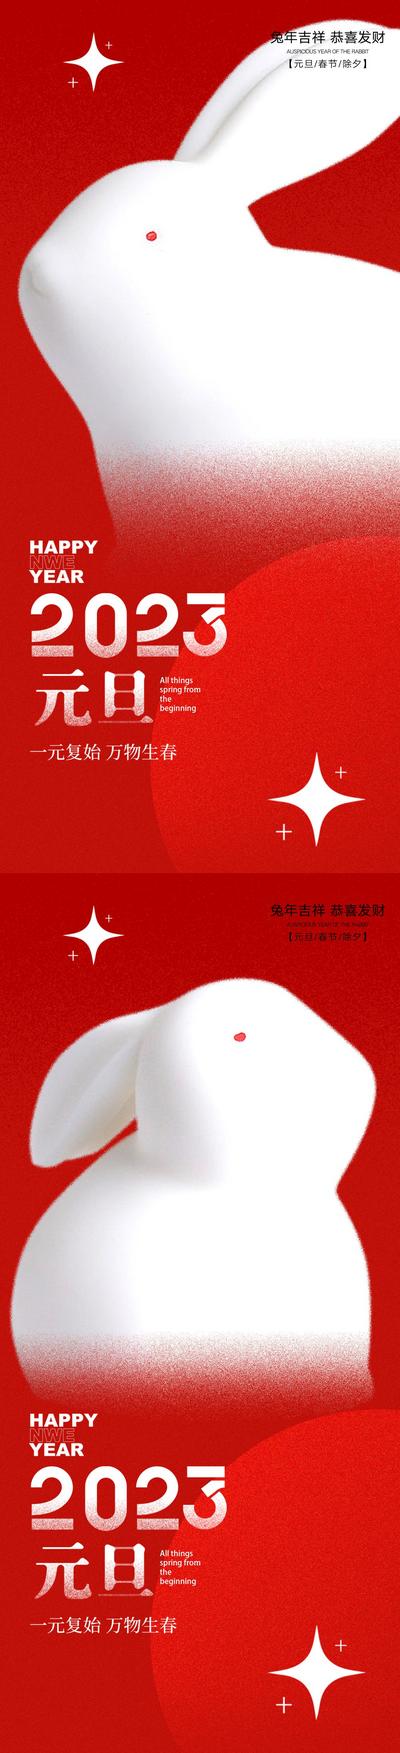 南门网 海报 公历节日 元旦 兔年 新年 兔子 系列